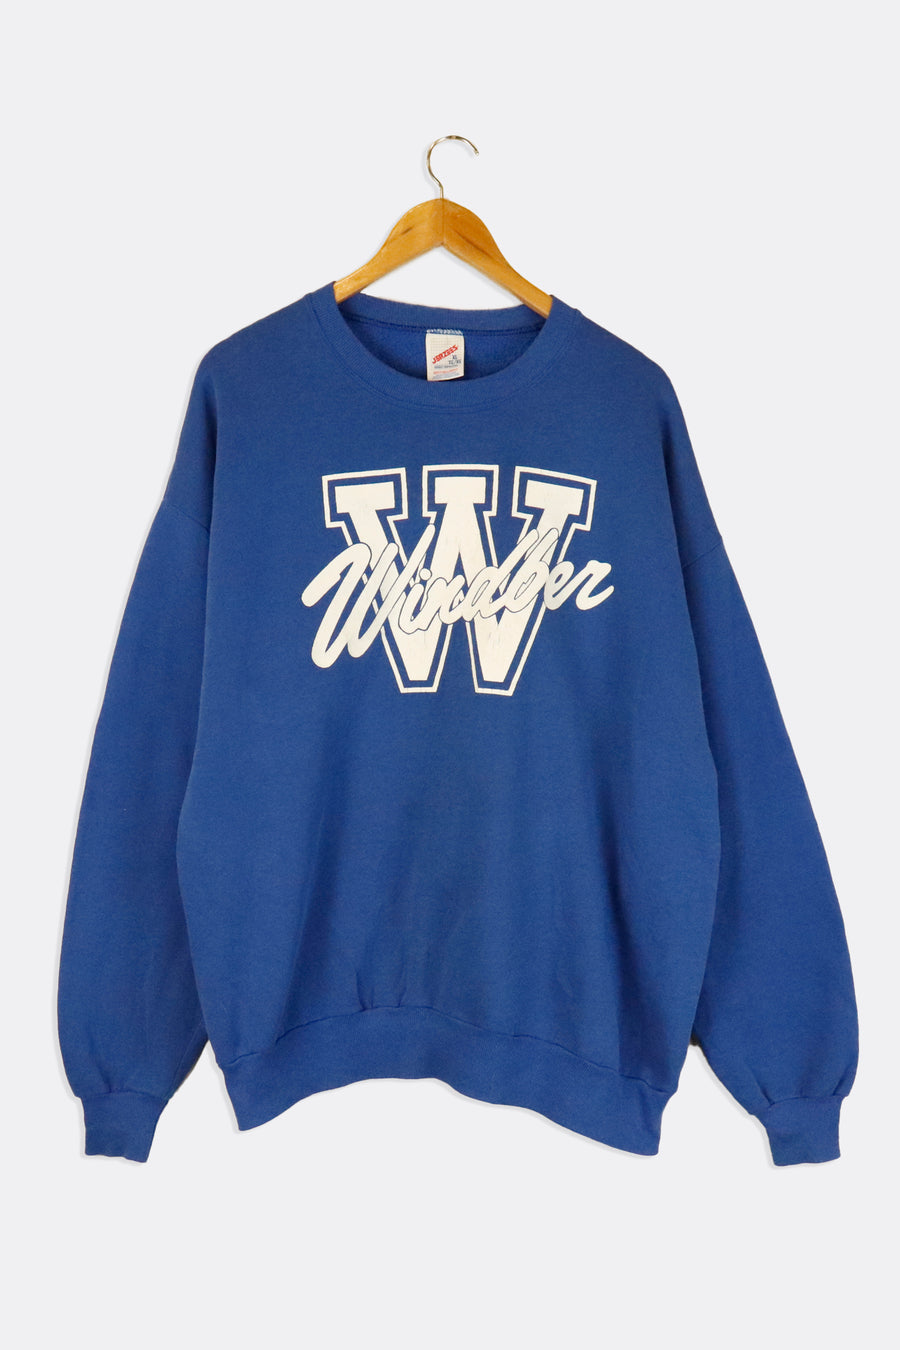 Vintage Windber Large W Varsity Vinyl Sweatshirt Sz XL